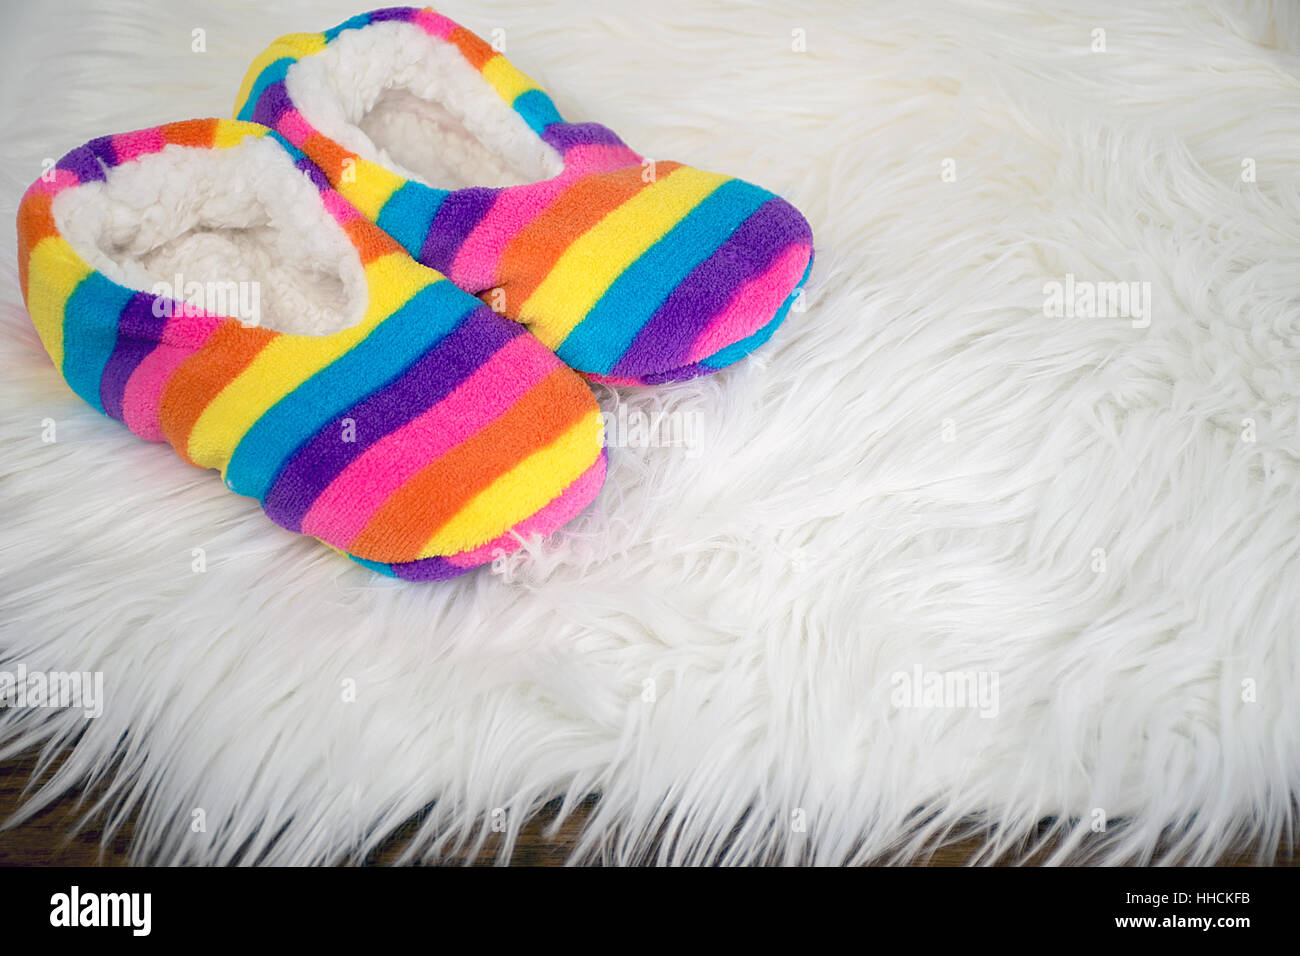 Paire de chaussons arc-en-ciel sur un tapis de fourrure blanche Banque D'Images